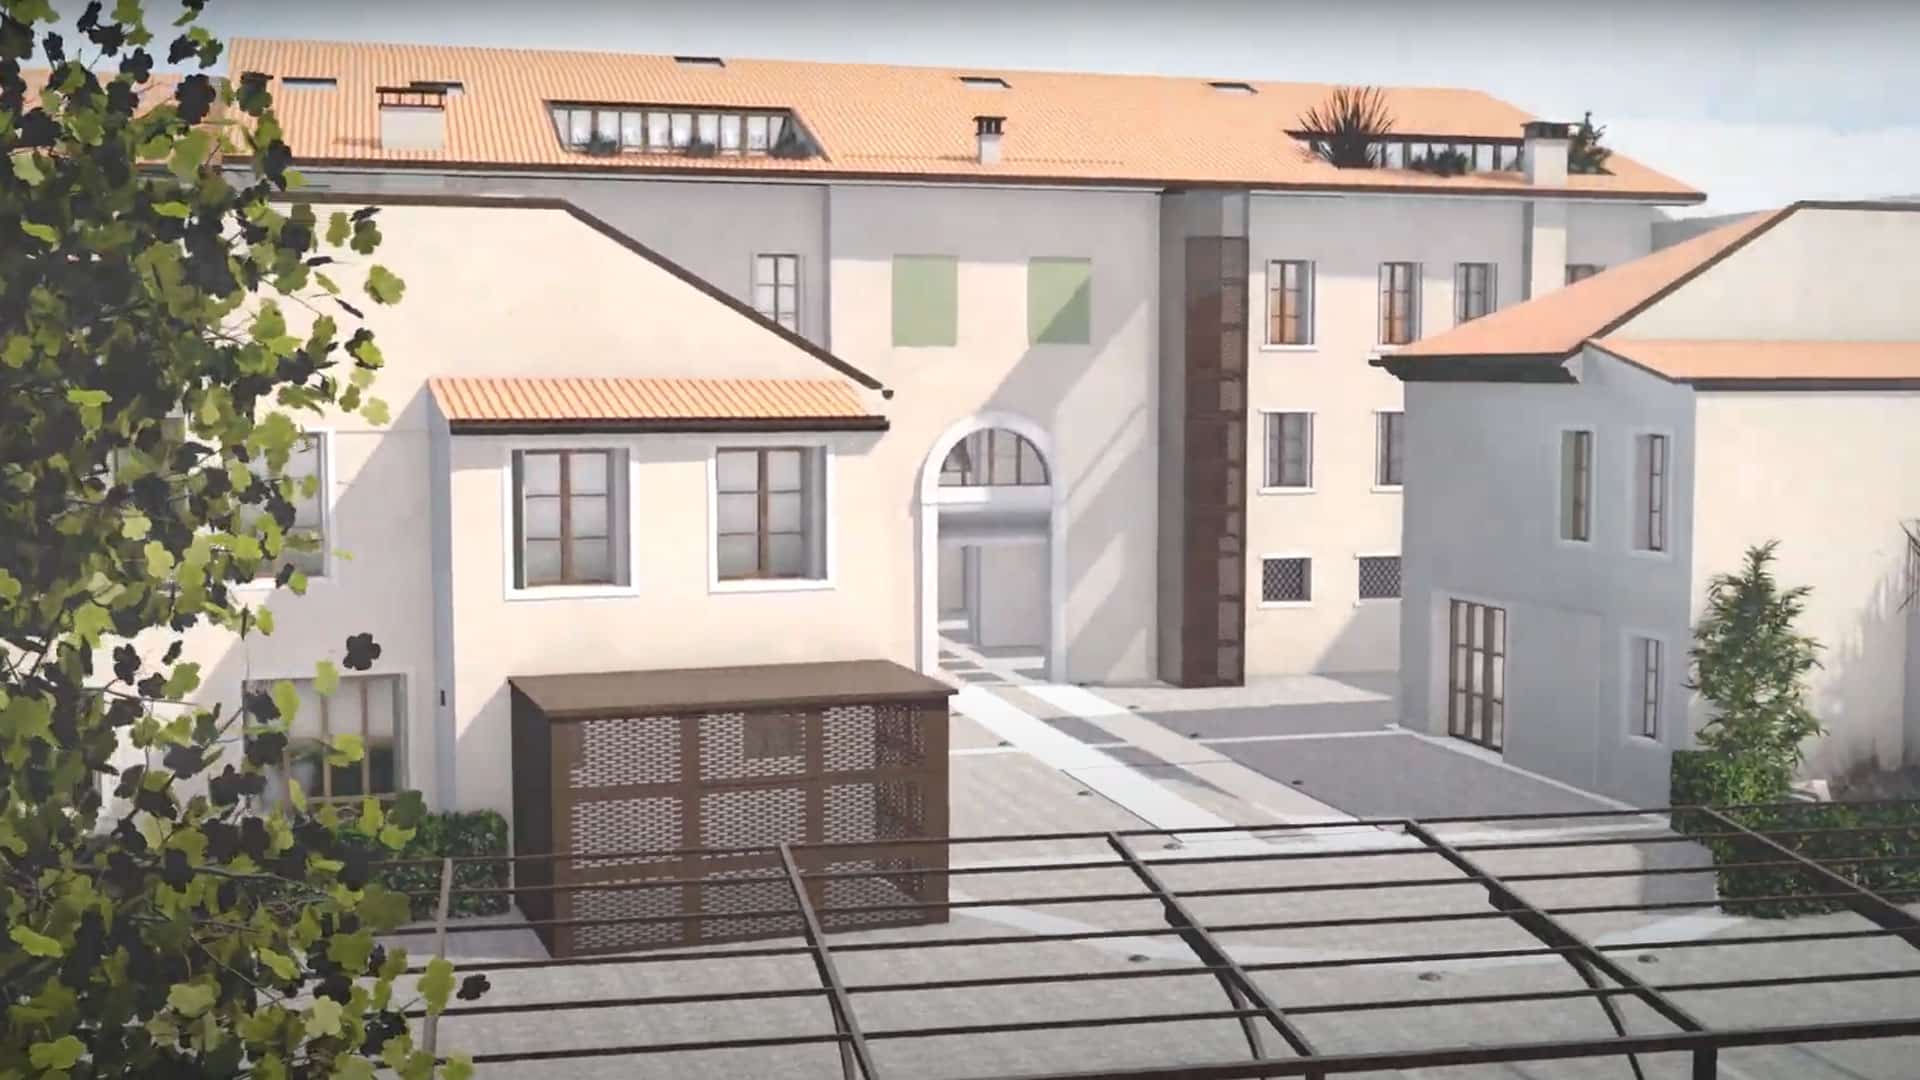 LDLBUILDING - Video Architettonico - Video architettonico per la presentazione di un nuovo complesso abitativo